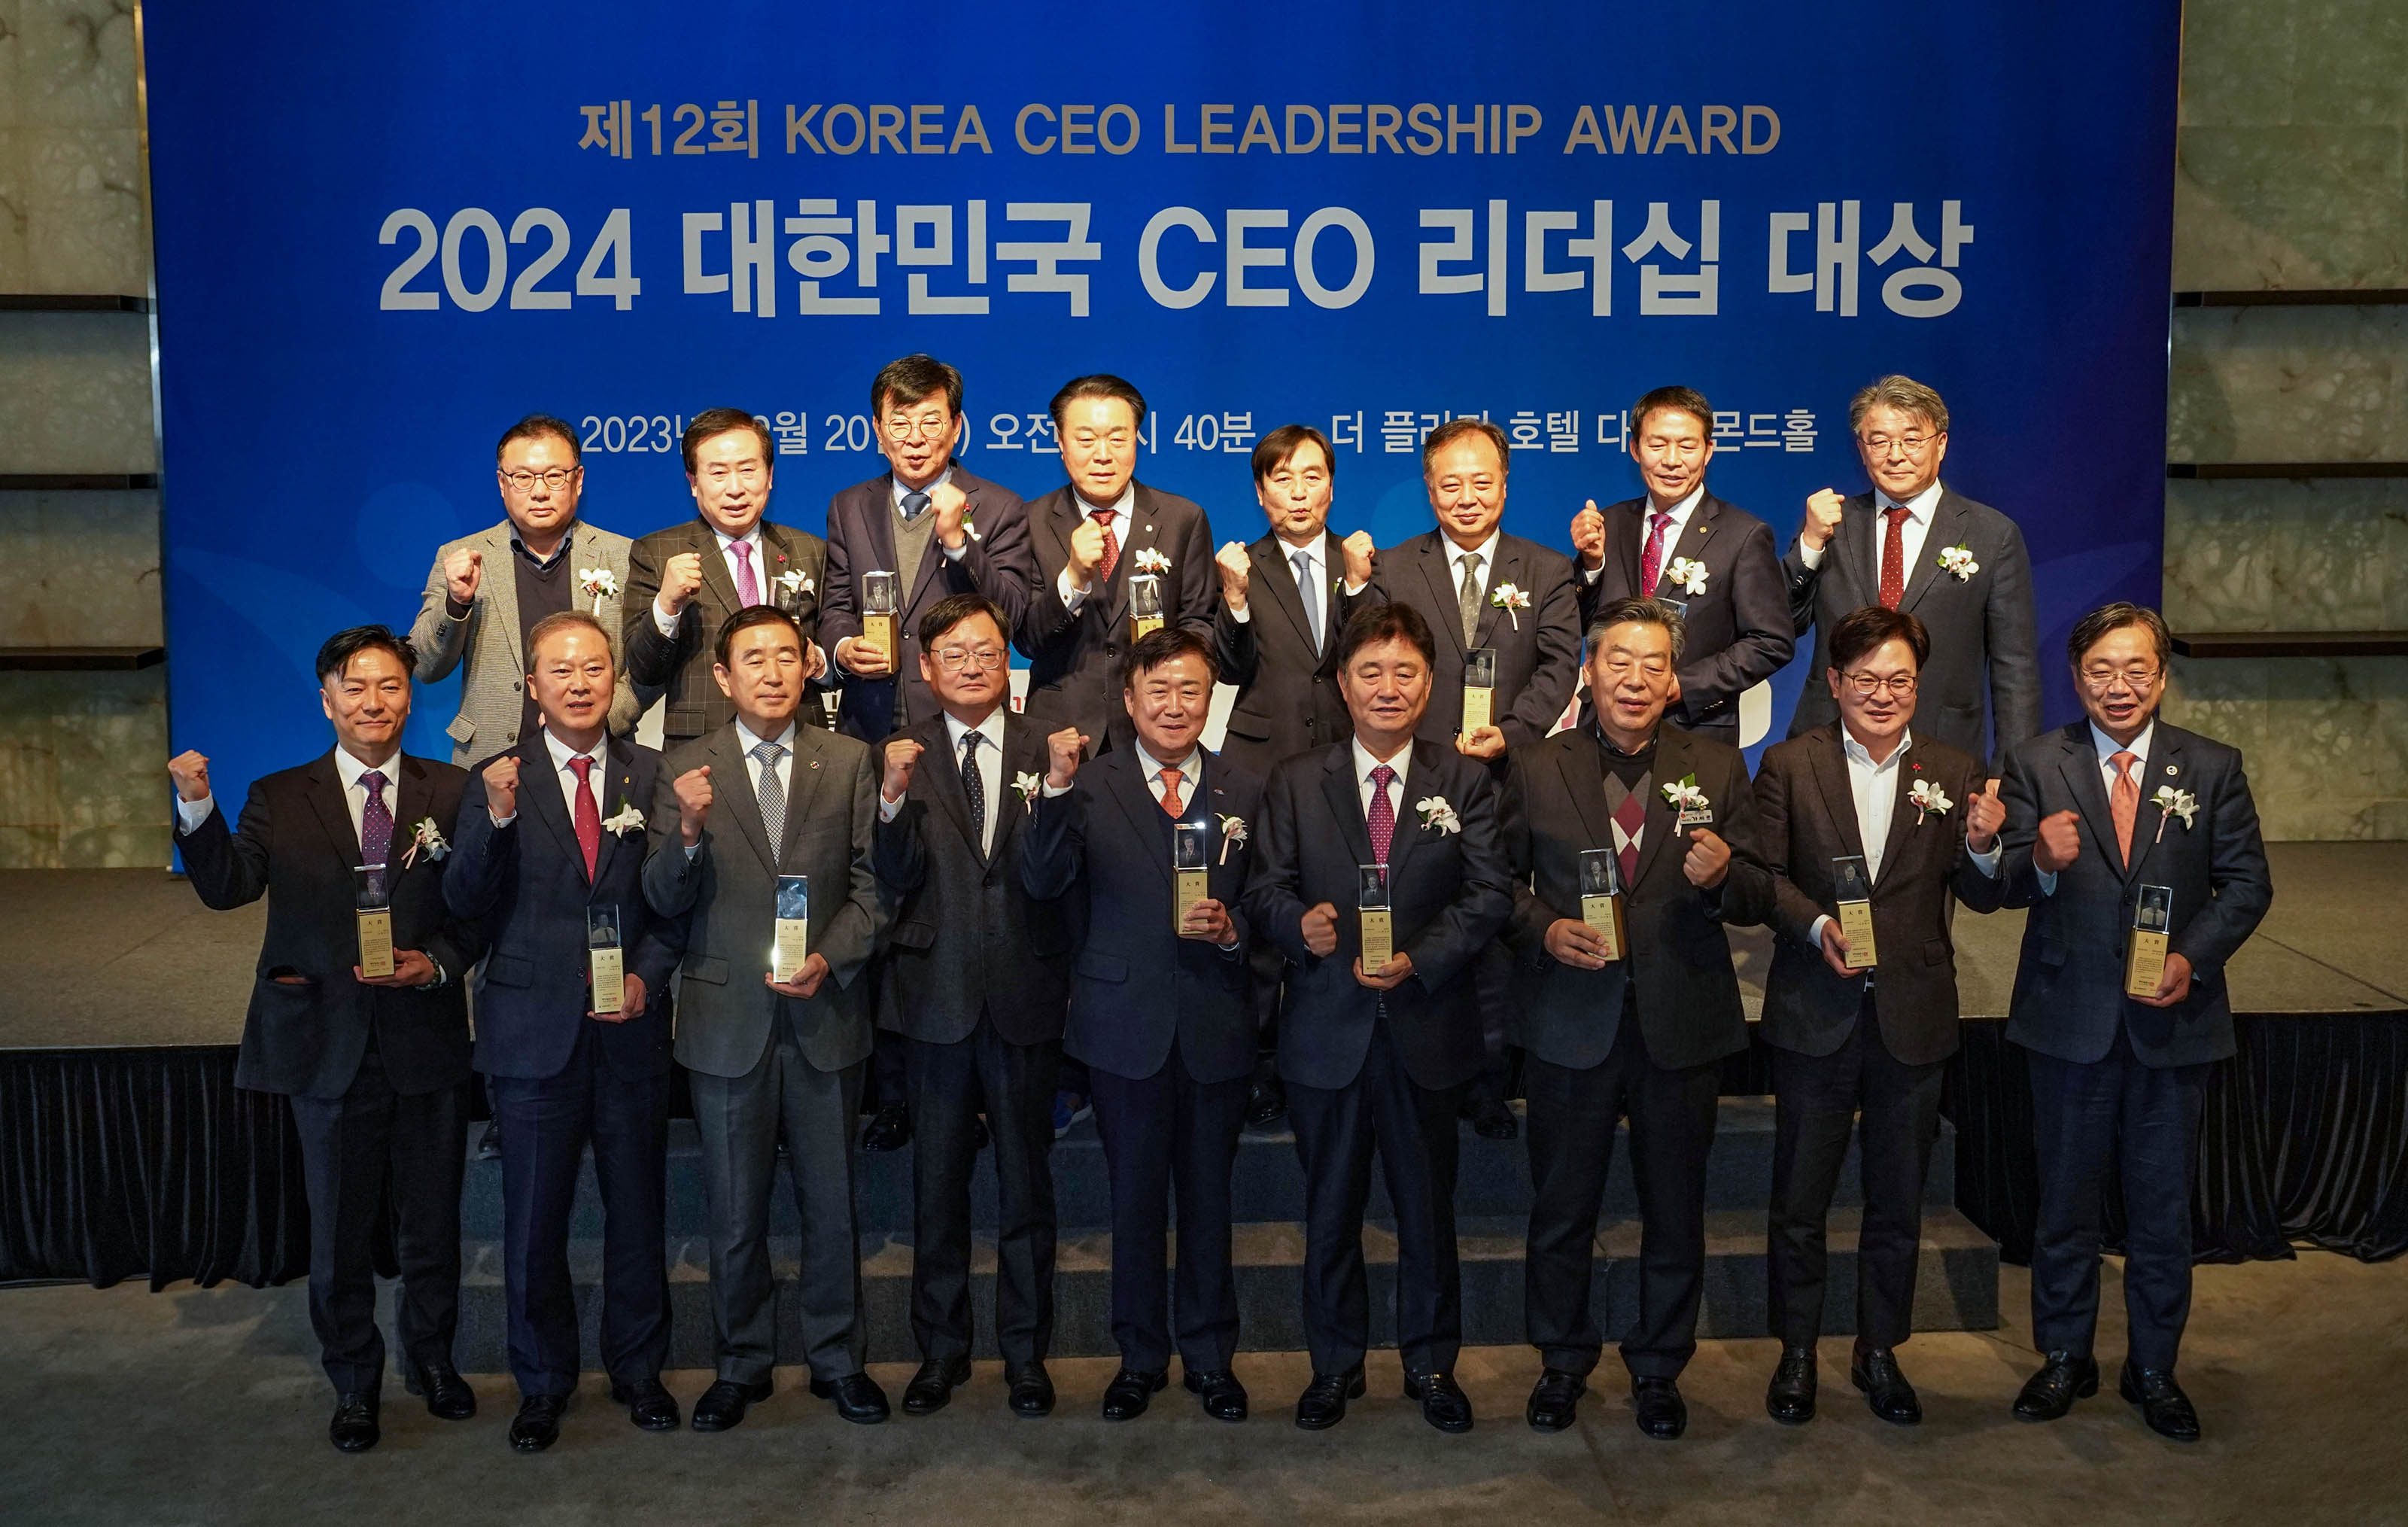 제 12회 KOREA CEO LEADERSHIP AWARD 2024 대한민국 CEO 리더쉽 대상 배경을두고 단상위에서 화이팅 포즈를 취하는 수상자들 단체사진